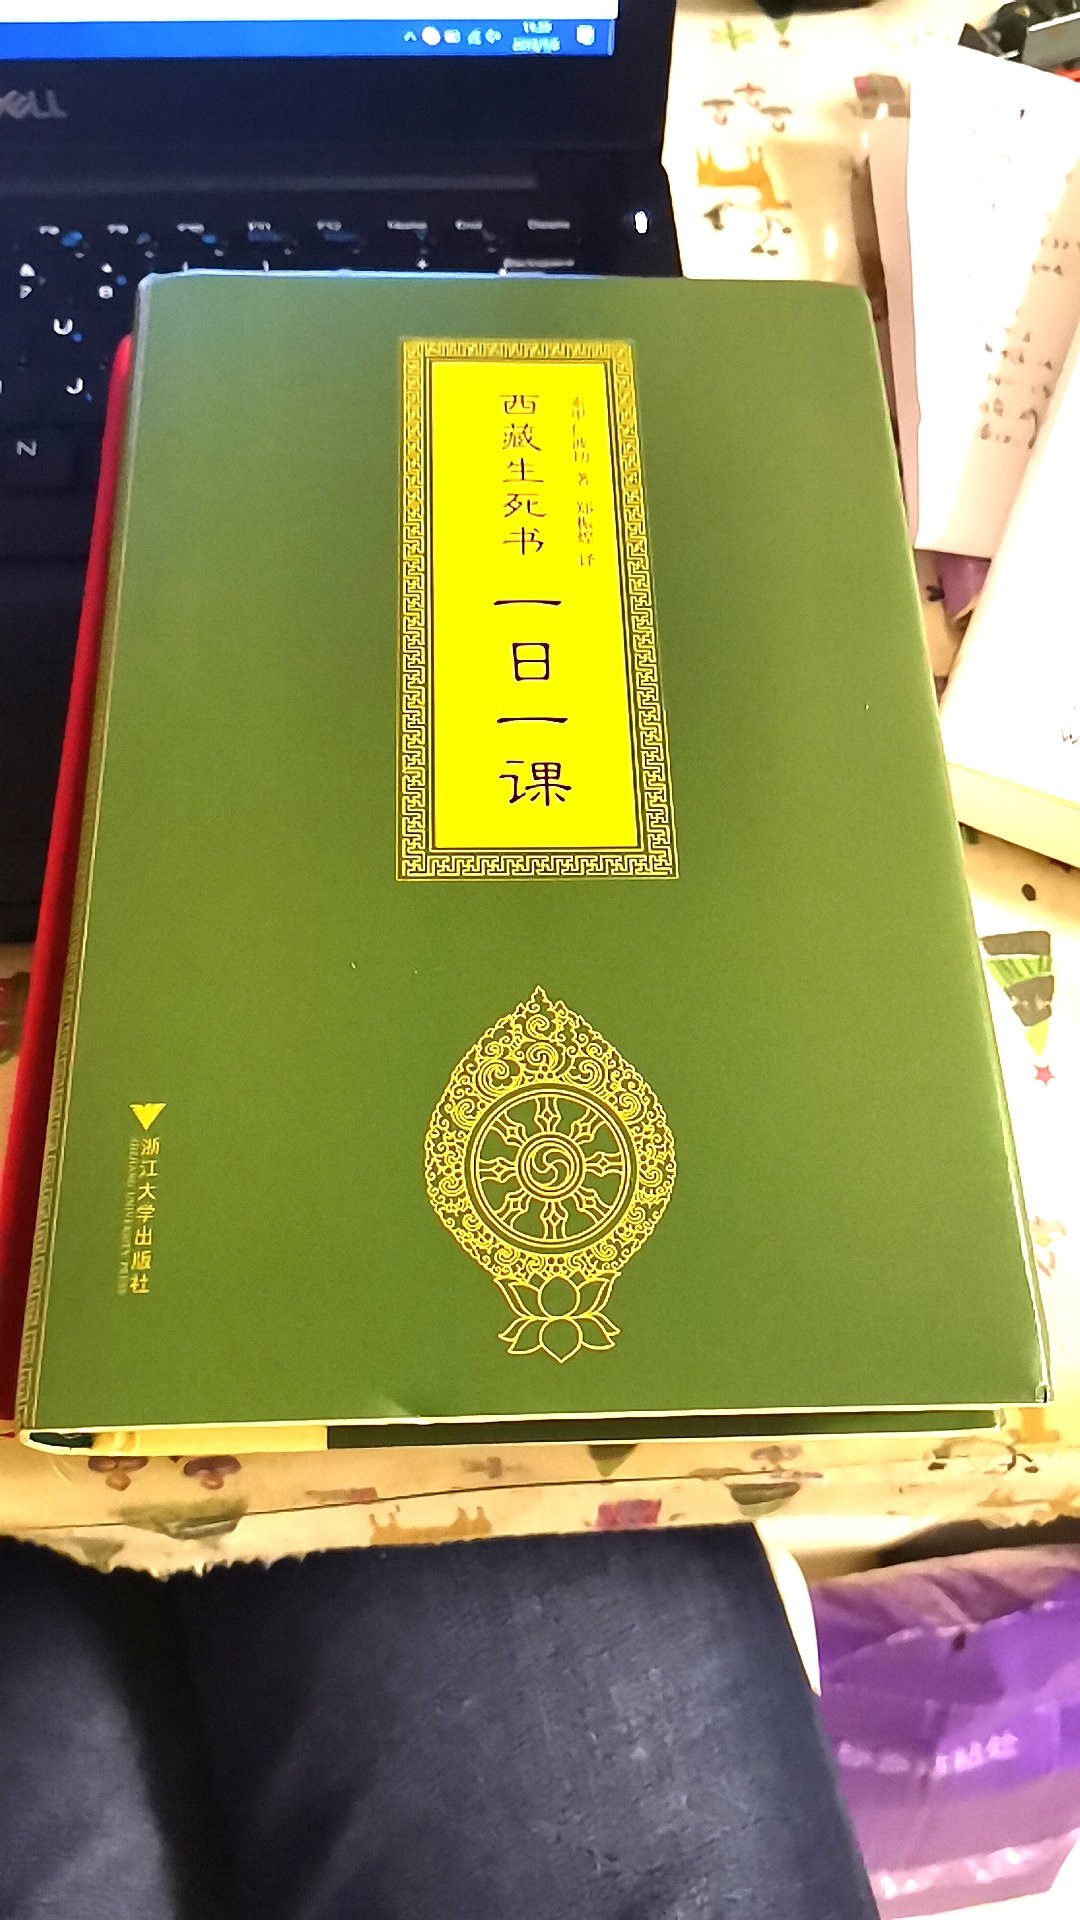 很喜欢，先买的西藏生死书，看到这个又想看了